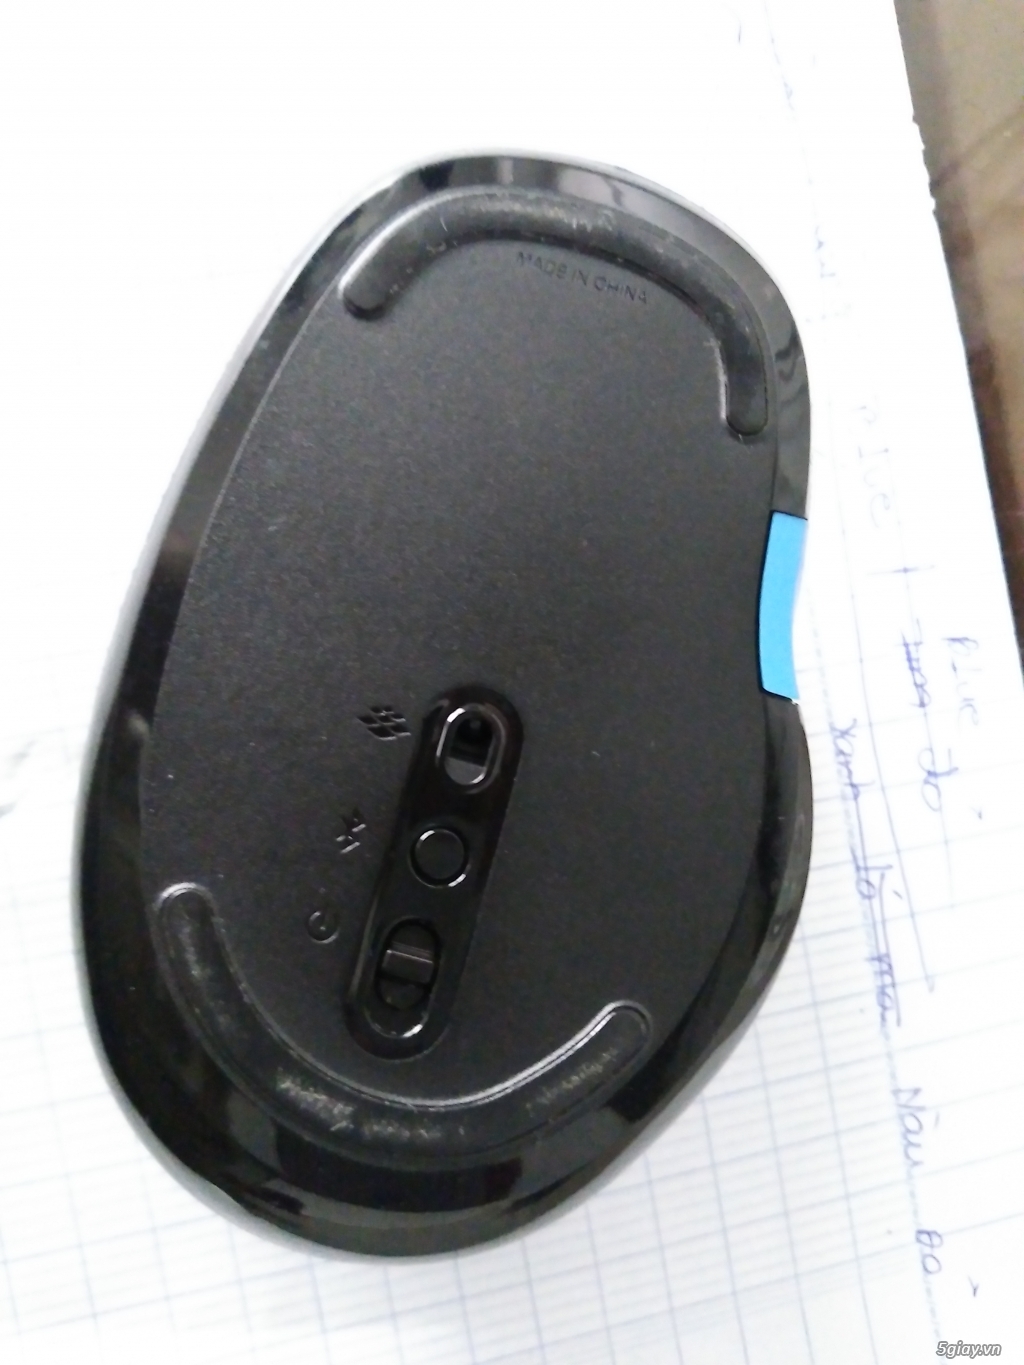 Thanh lý chuột Microsoft Sculpt Comfort Bluetooth